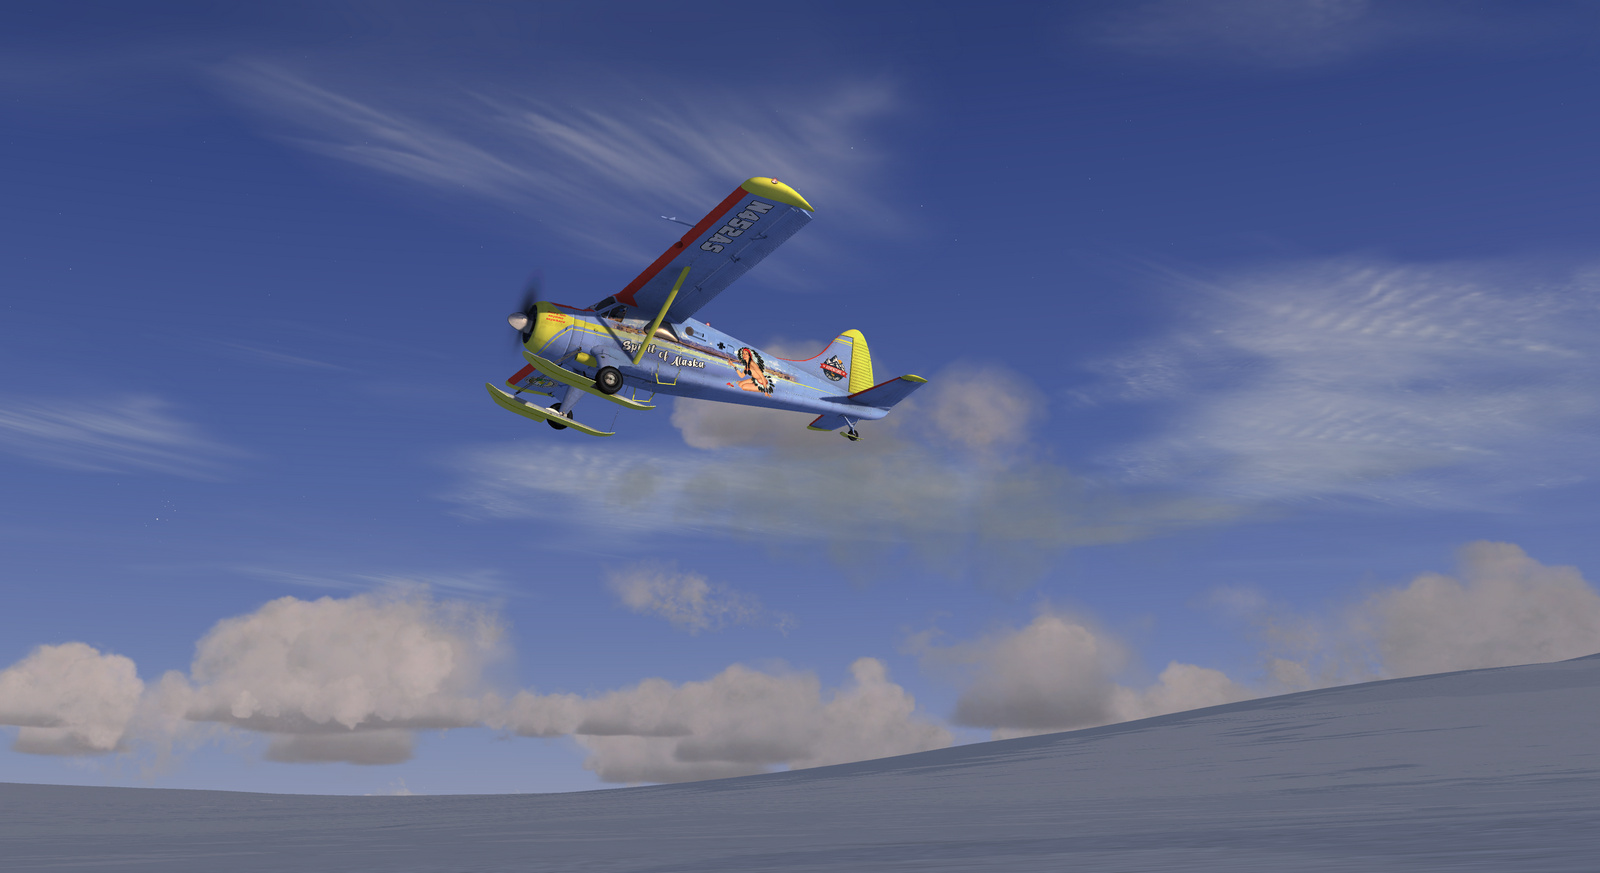 DHC-2 Beaver, Spirit of Alaska, Skis version, Screenshot 16/19